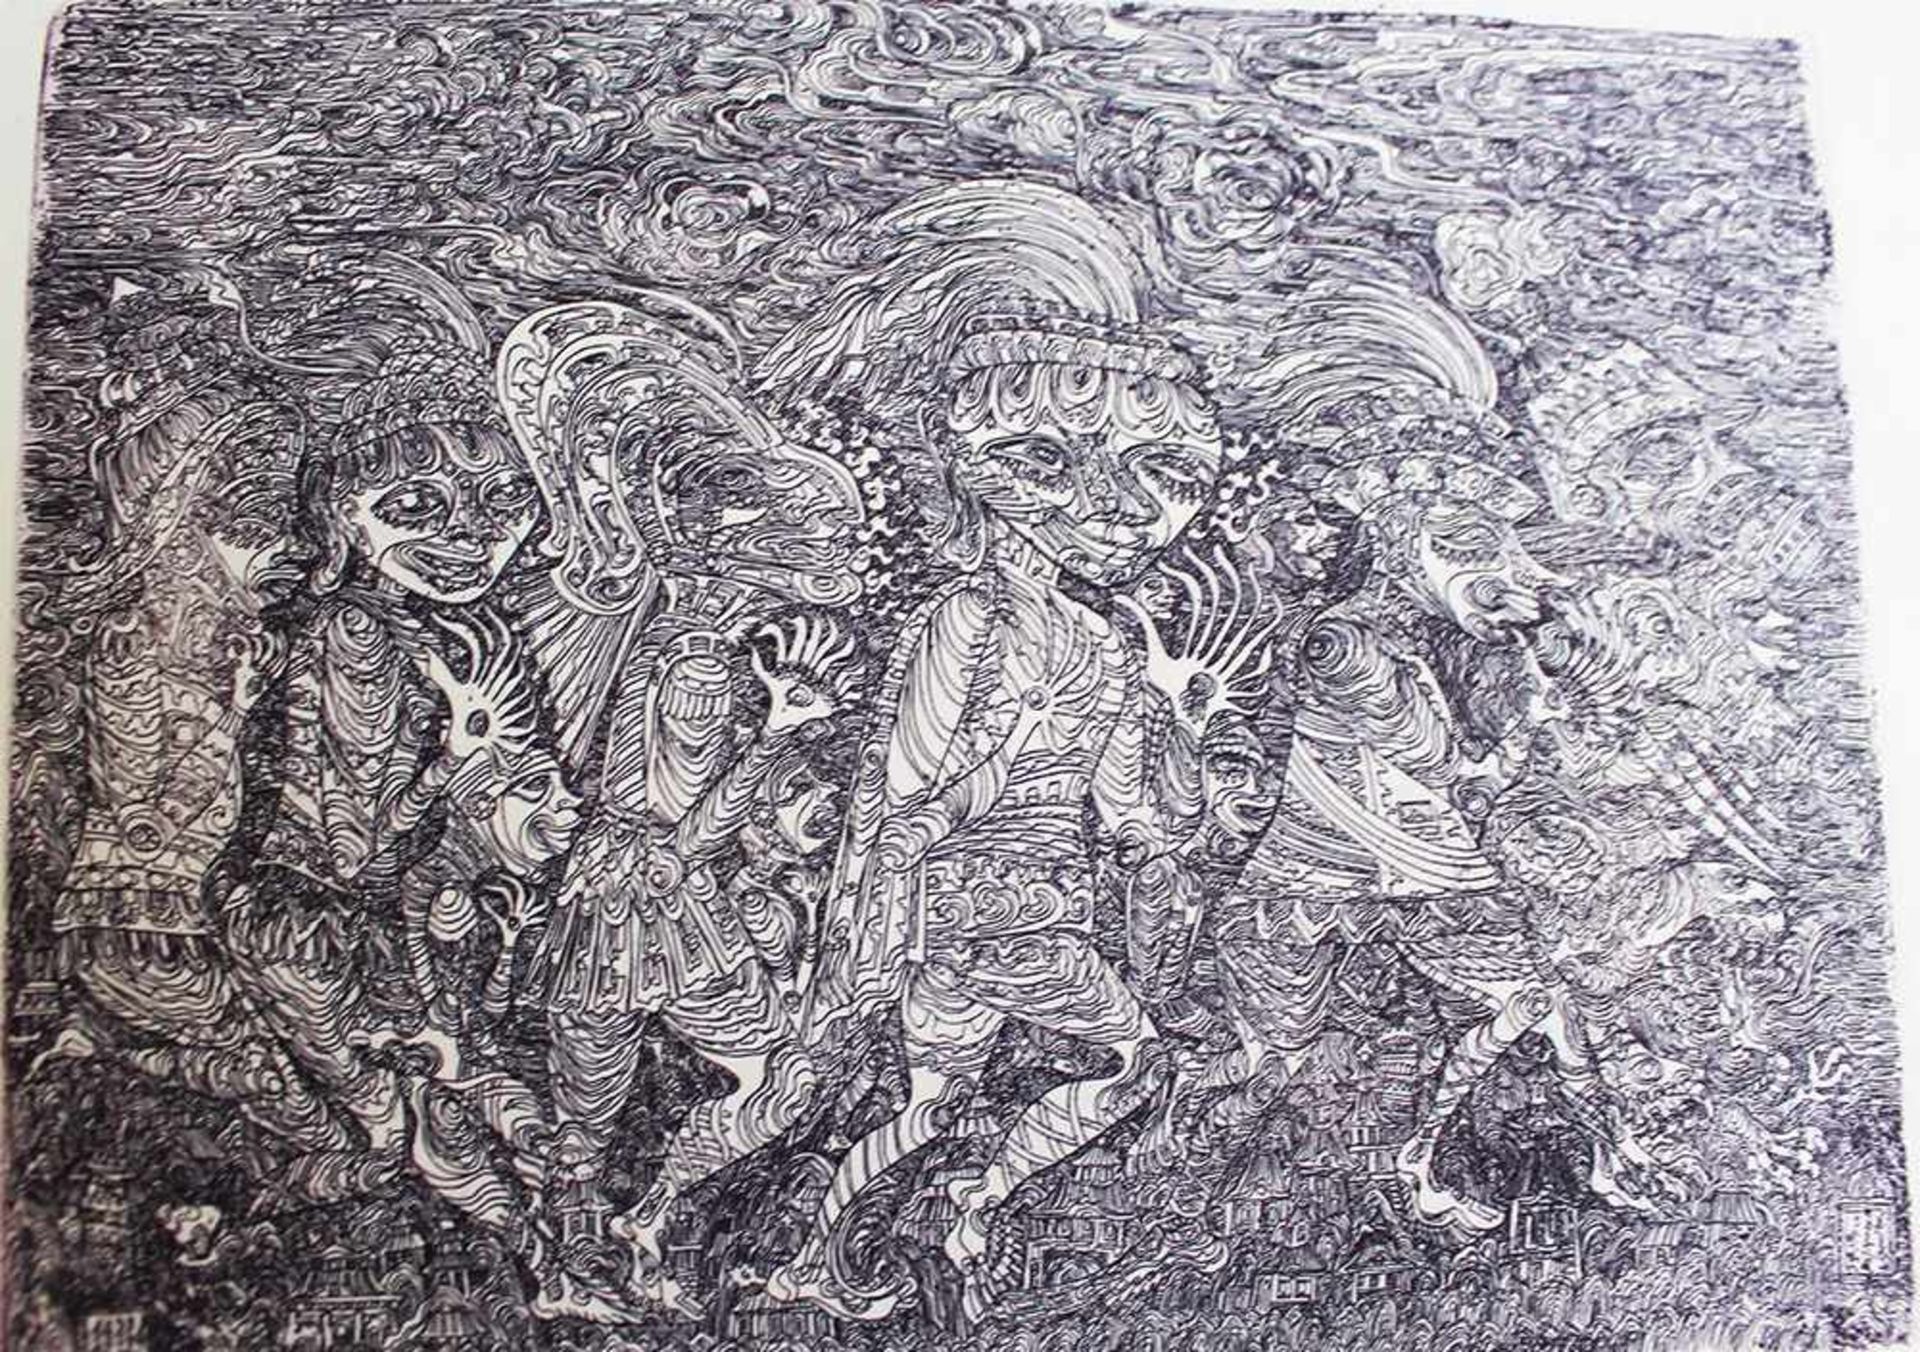 Robert Dogat, 3 etchings on paper.Dieses Los wird in einer online-Auktion ohne Publikum angeboten. - Bild 2 aus 3